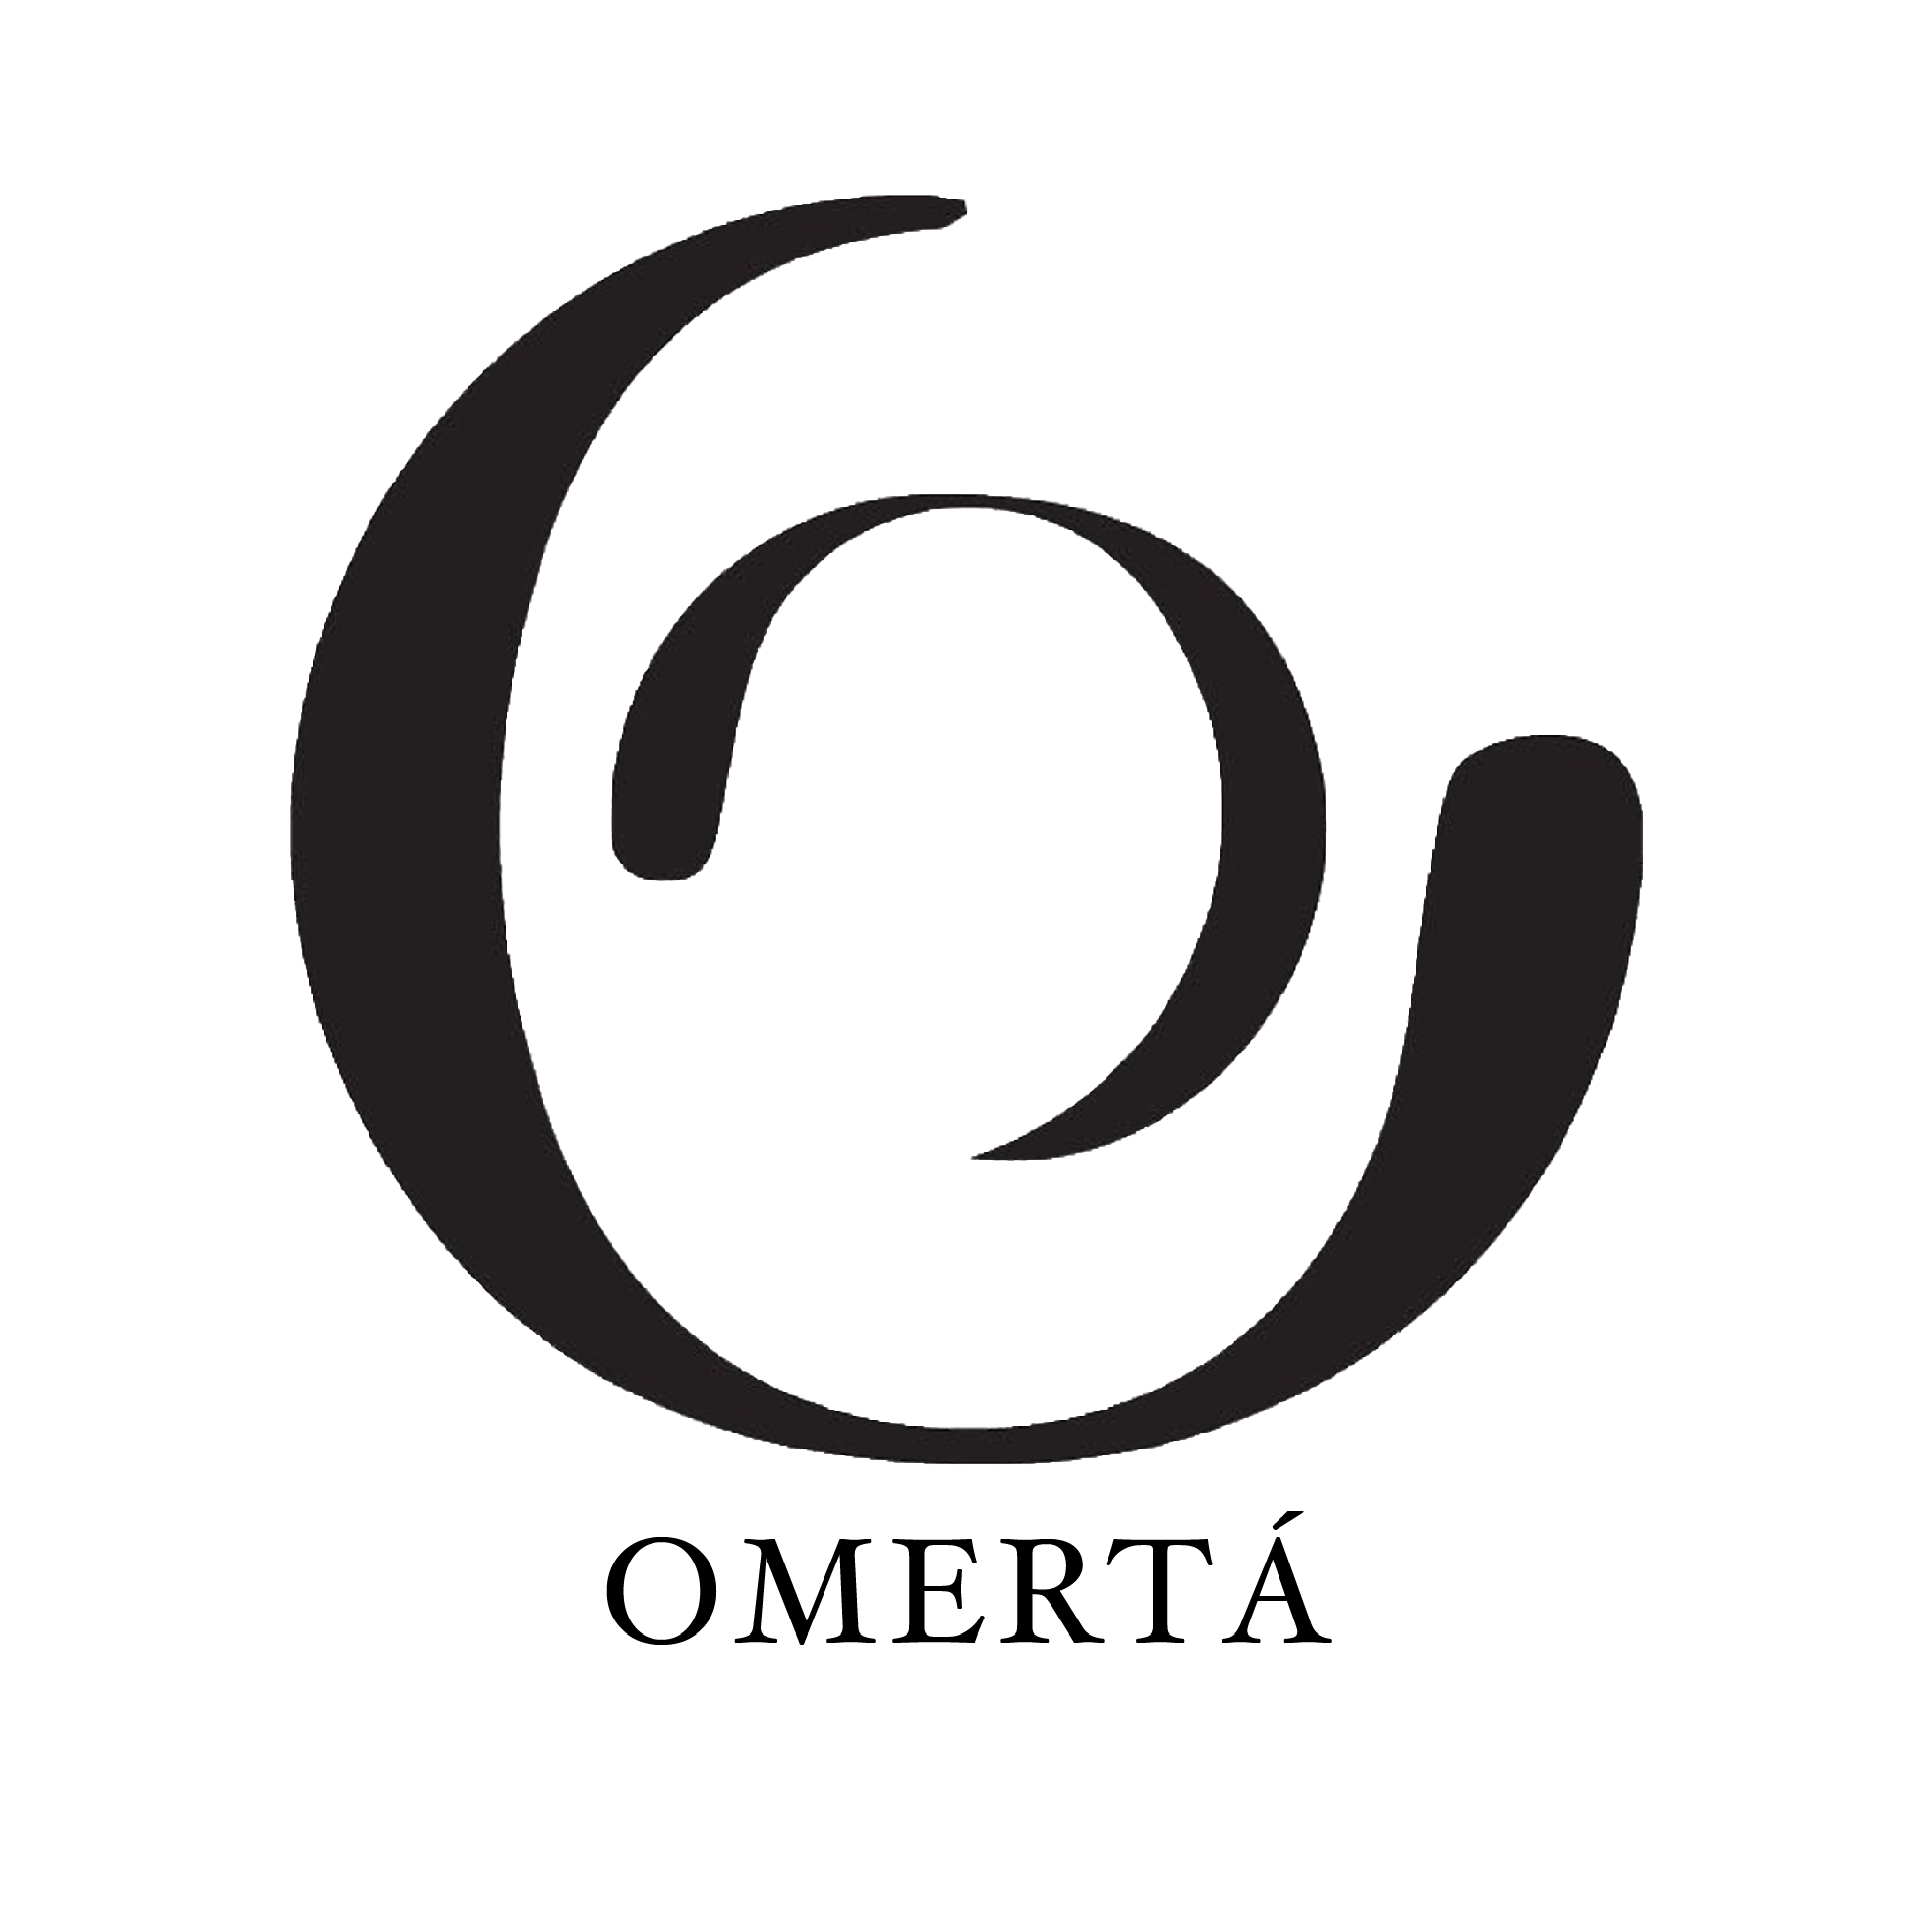 Omerta global logo